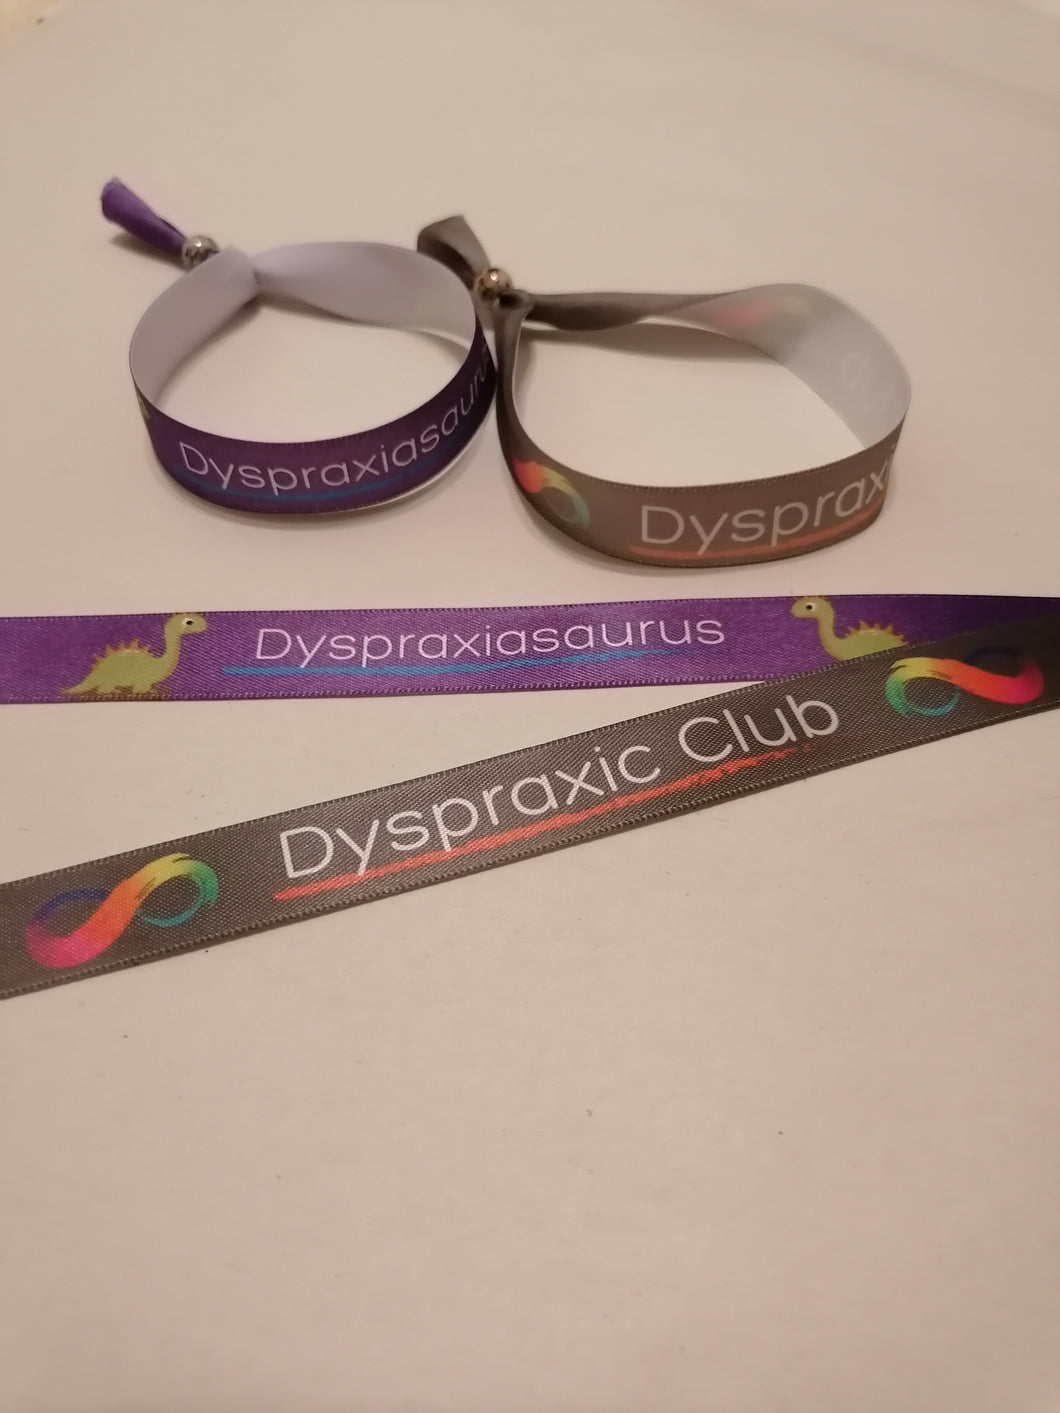 Dyspraxic Club & Dyspraxiasaurus Wristbands